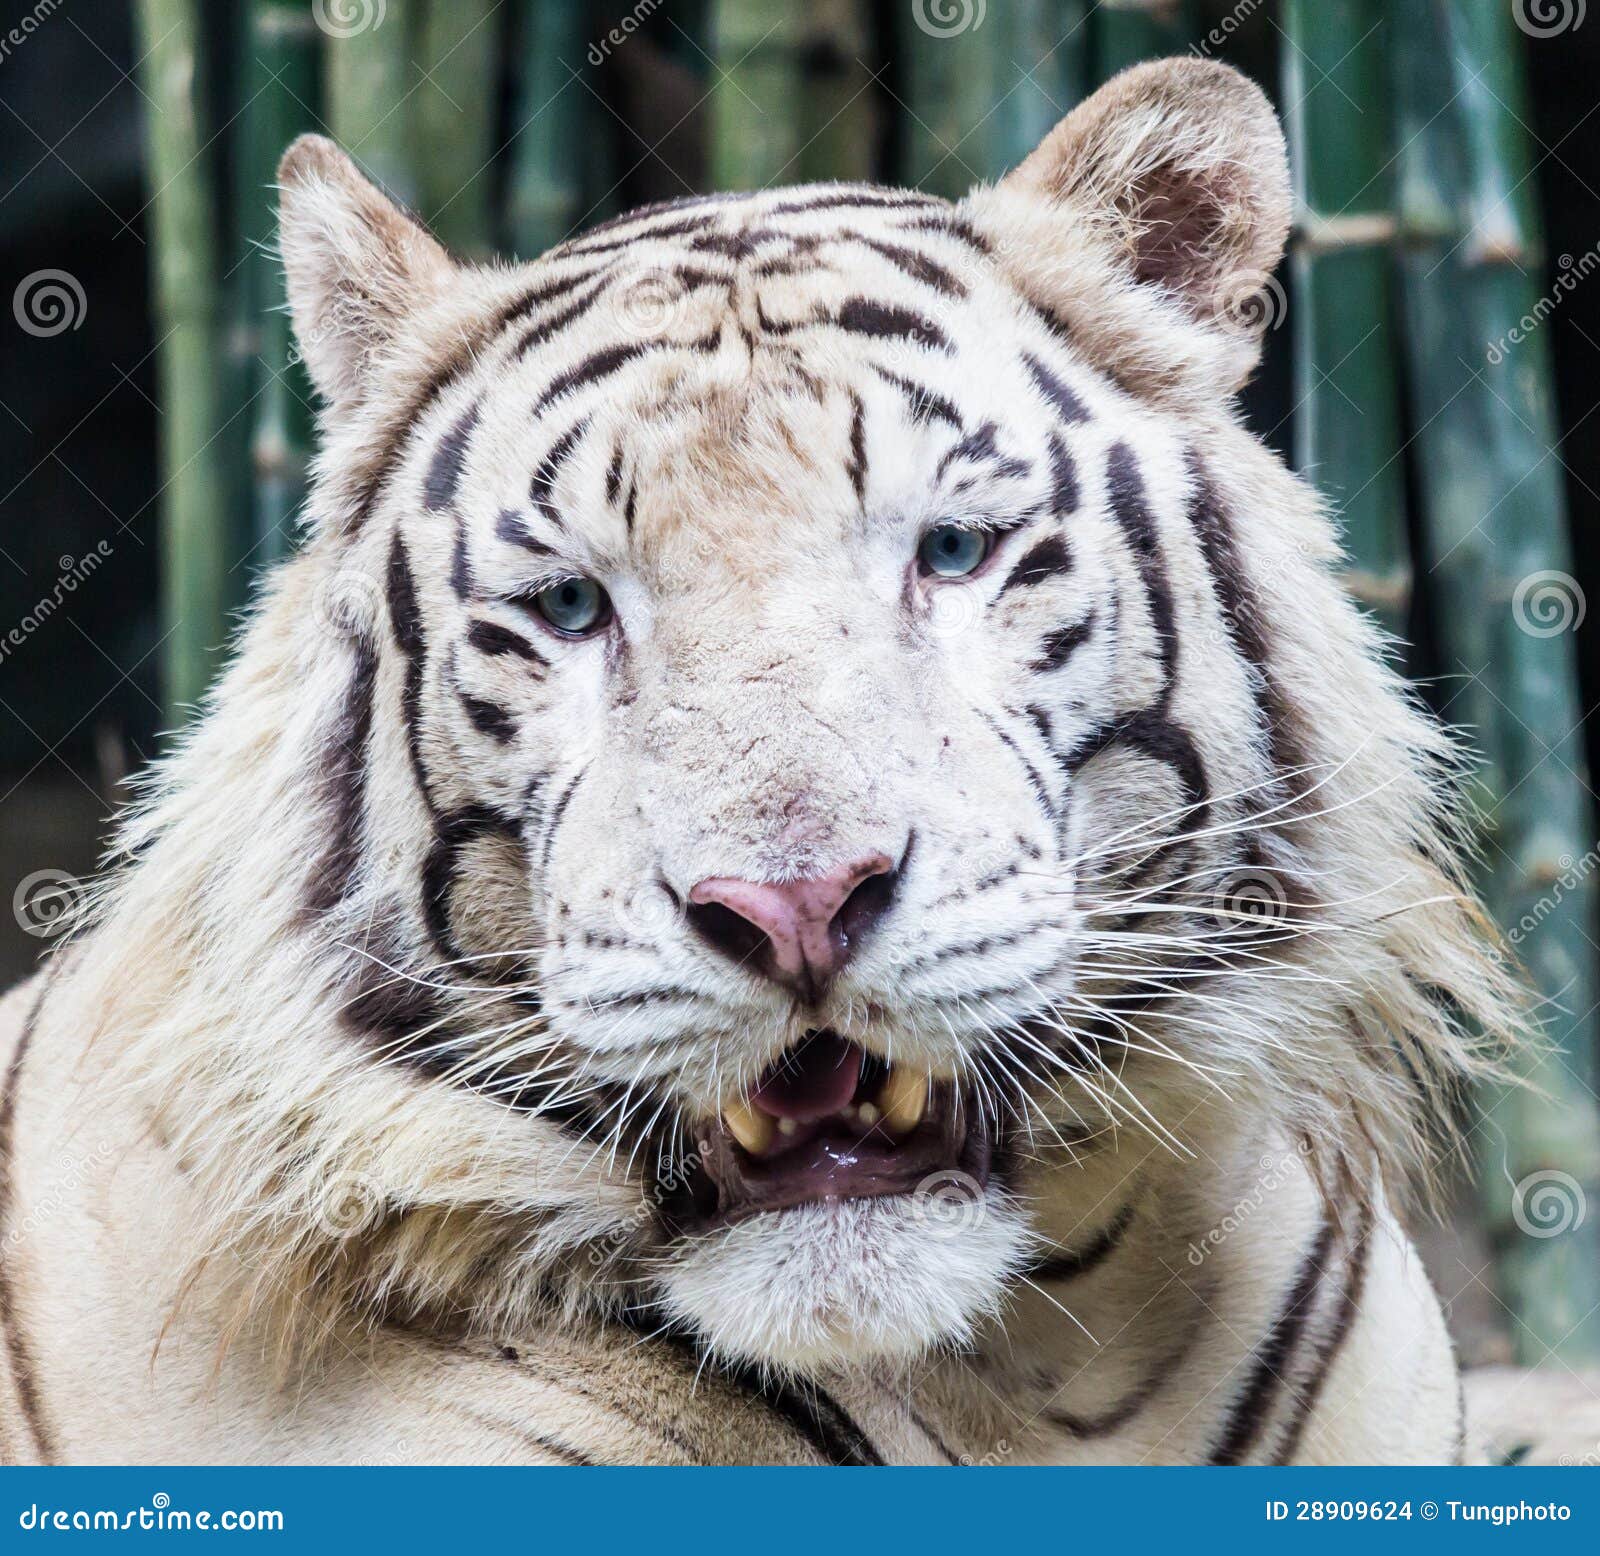 Fonds d'ecran 1920x1080 Tigre Blanc Voir Animaux télécharger photo